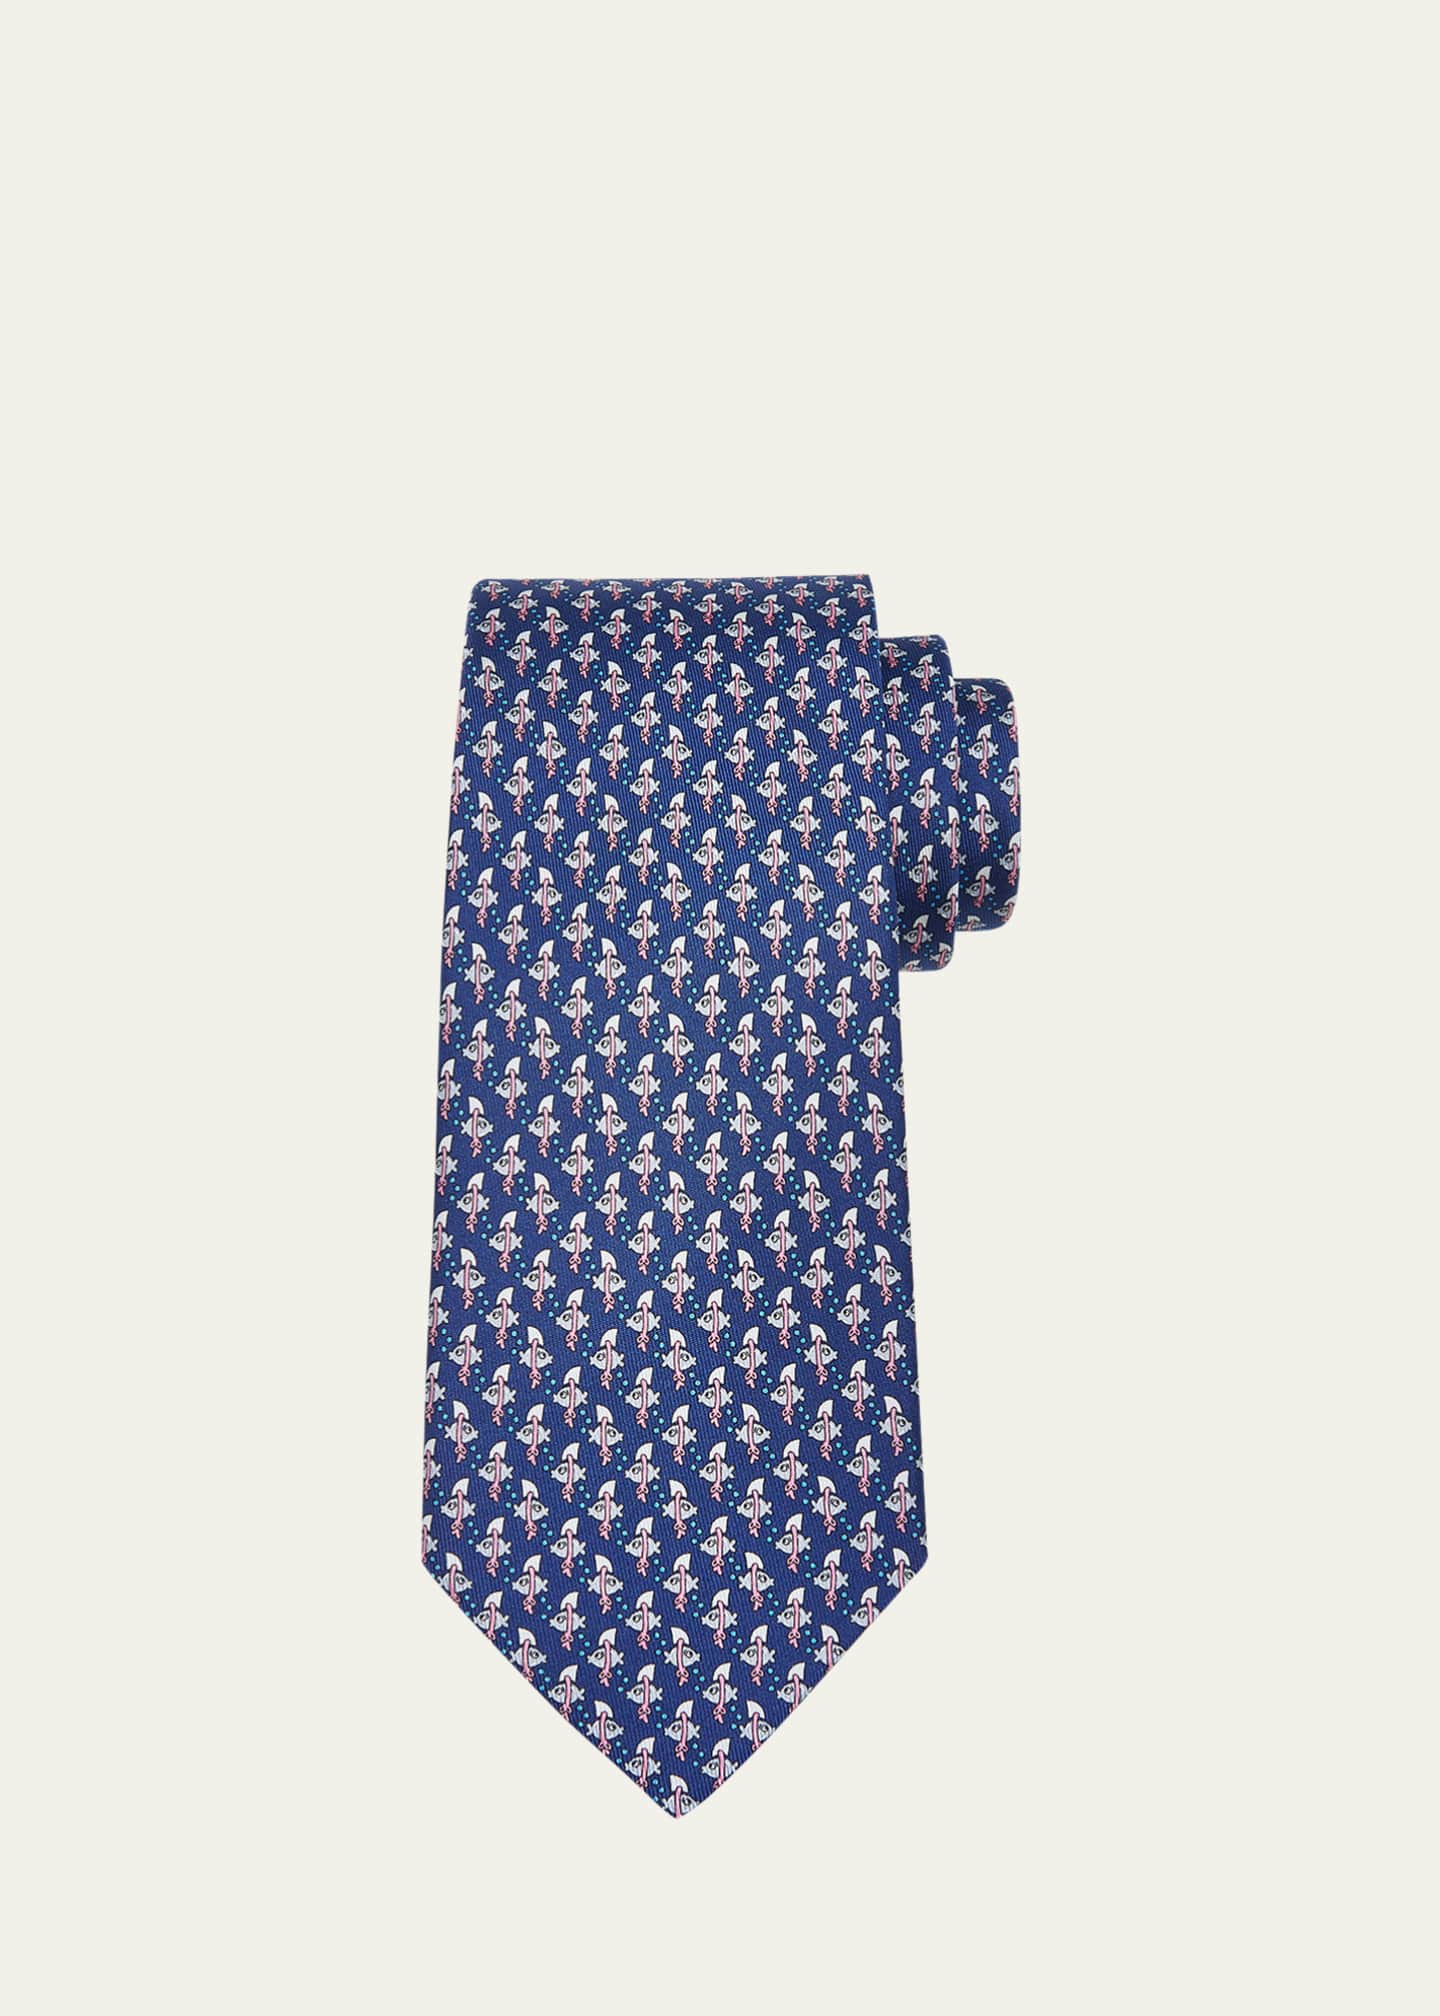 Fishing Necktie. Fish Hook Men's Tie. playing Hooky Blue Silk Necktie.  Silkscreened Dove Gray Print. 